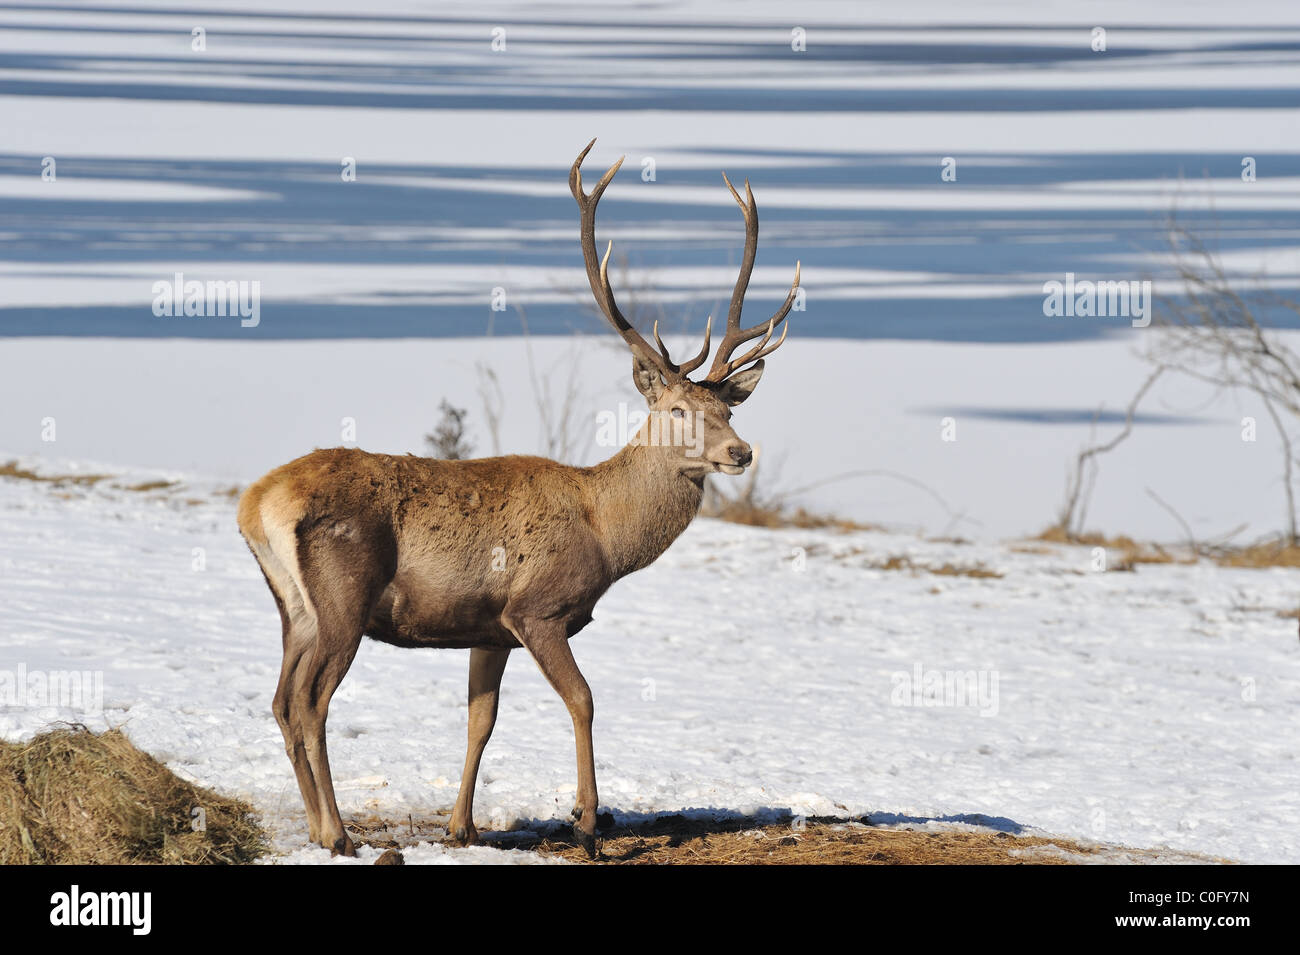 deer in winter Stock Photo